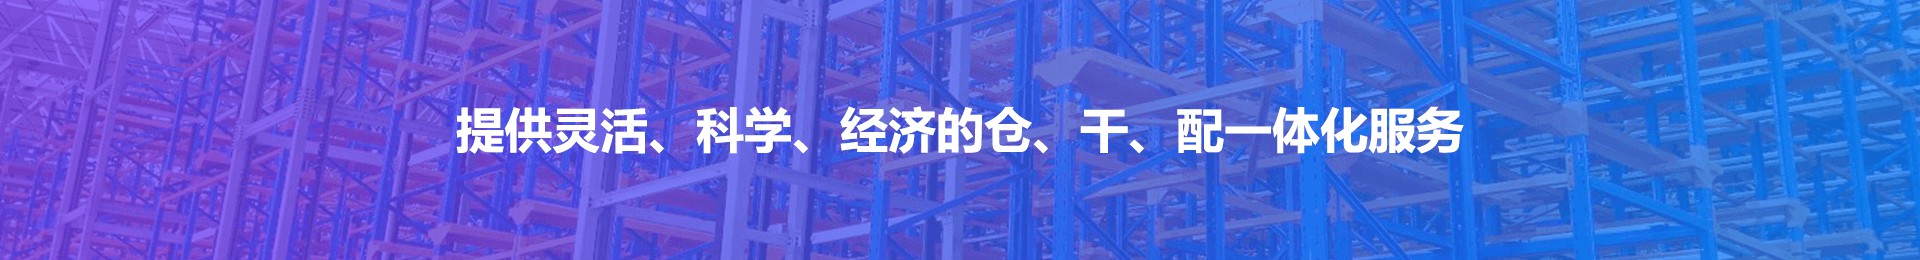 好仓推荐_Yuanfu Logistics Group Co.,Ltd.—Serving our customer to focus on core business,win-win on the supply chain【official website】